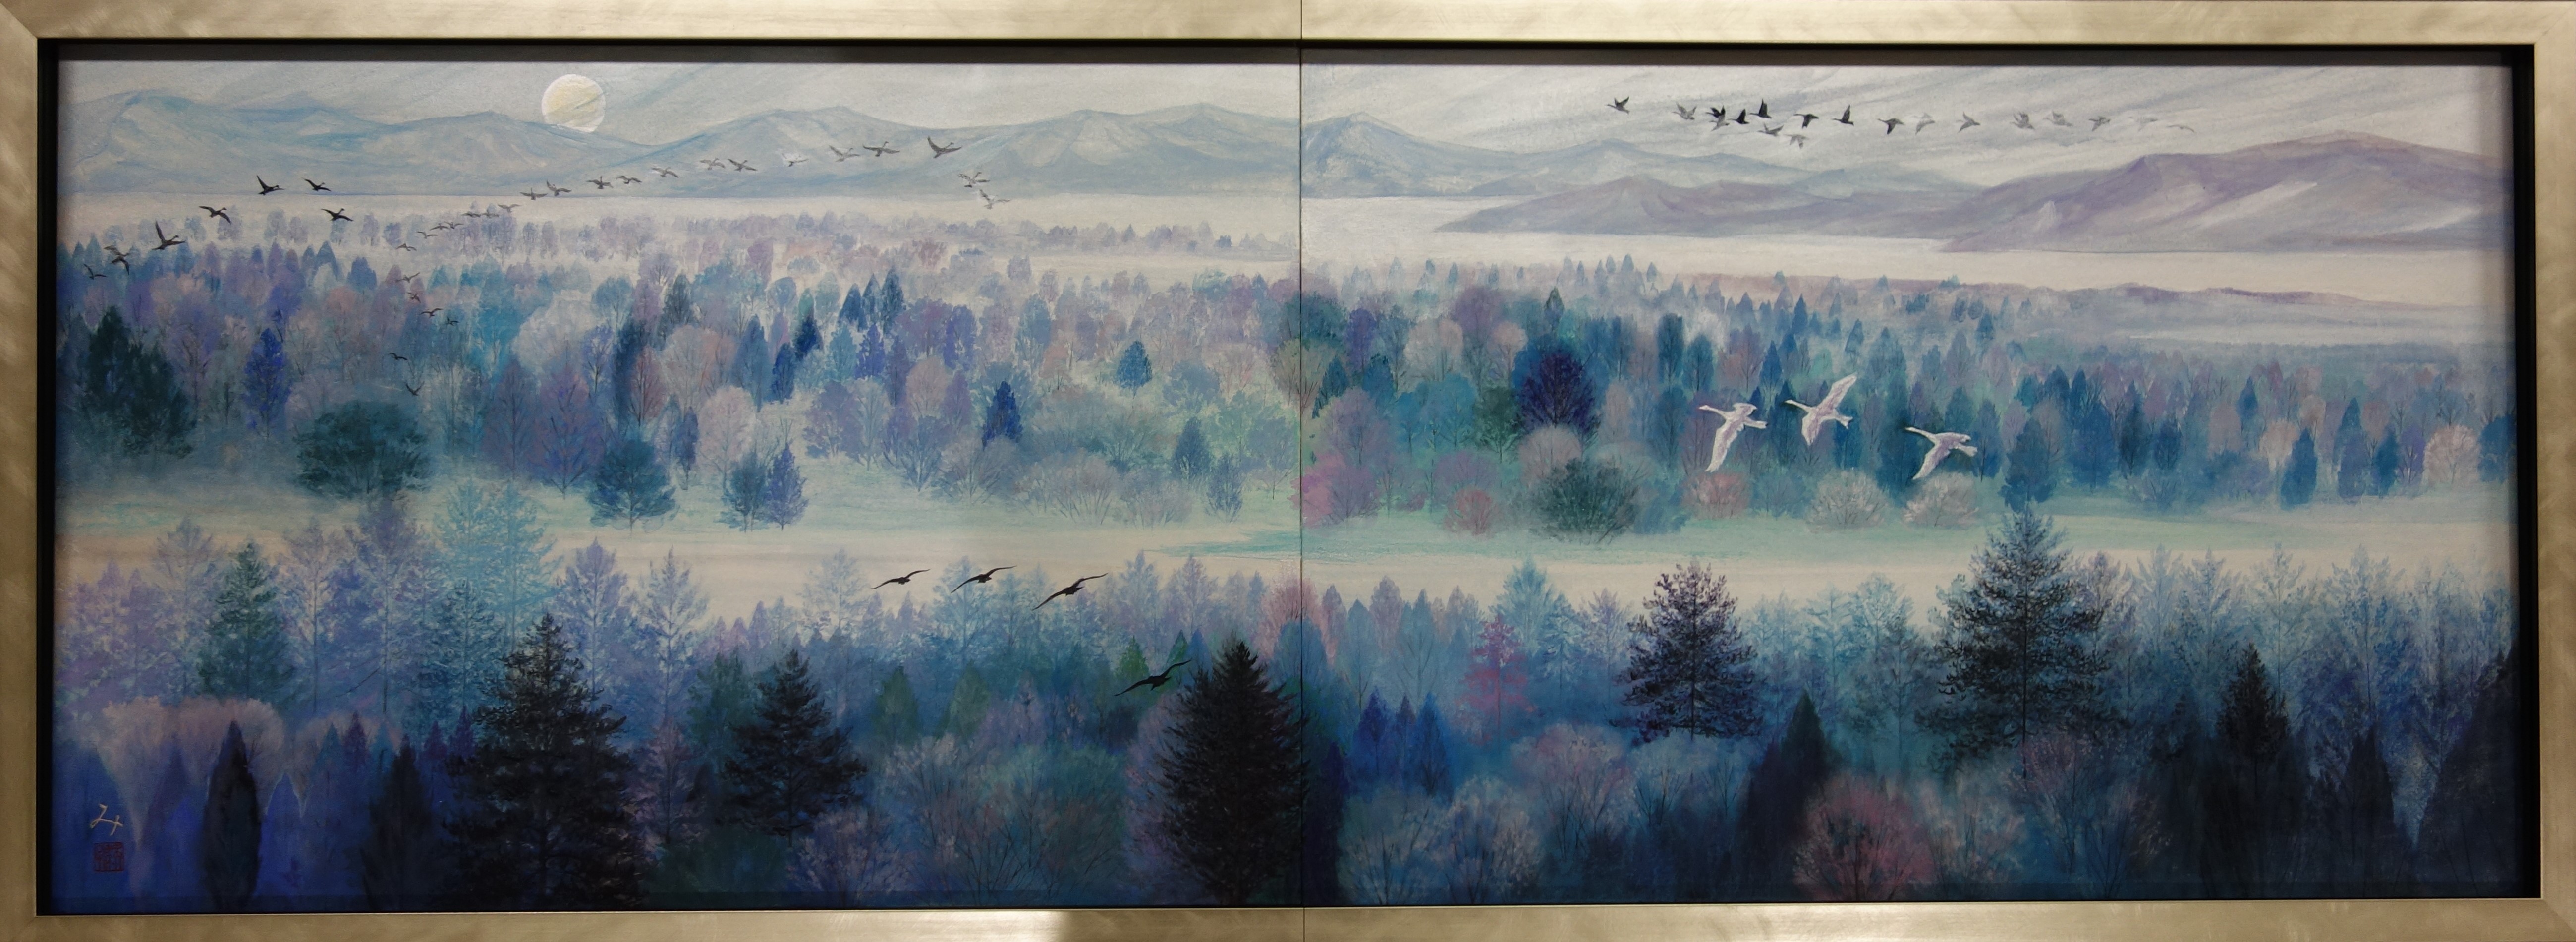 ノルウエーの森ー白鳥の舞いー | アート・インテリア絵画の通販・販売